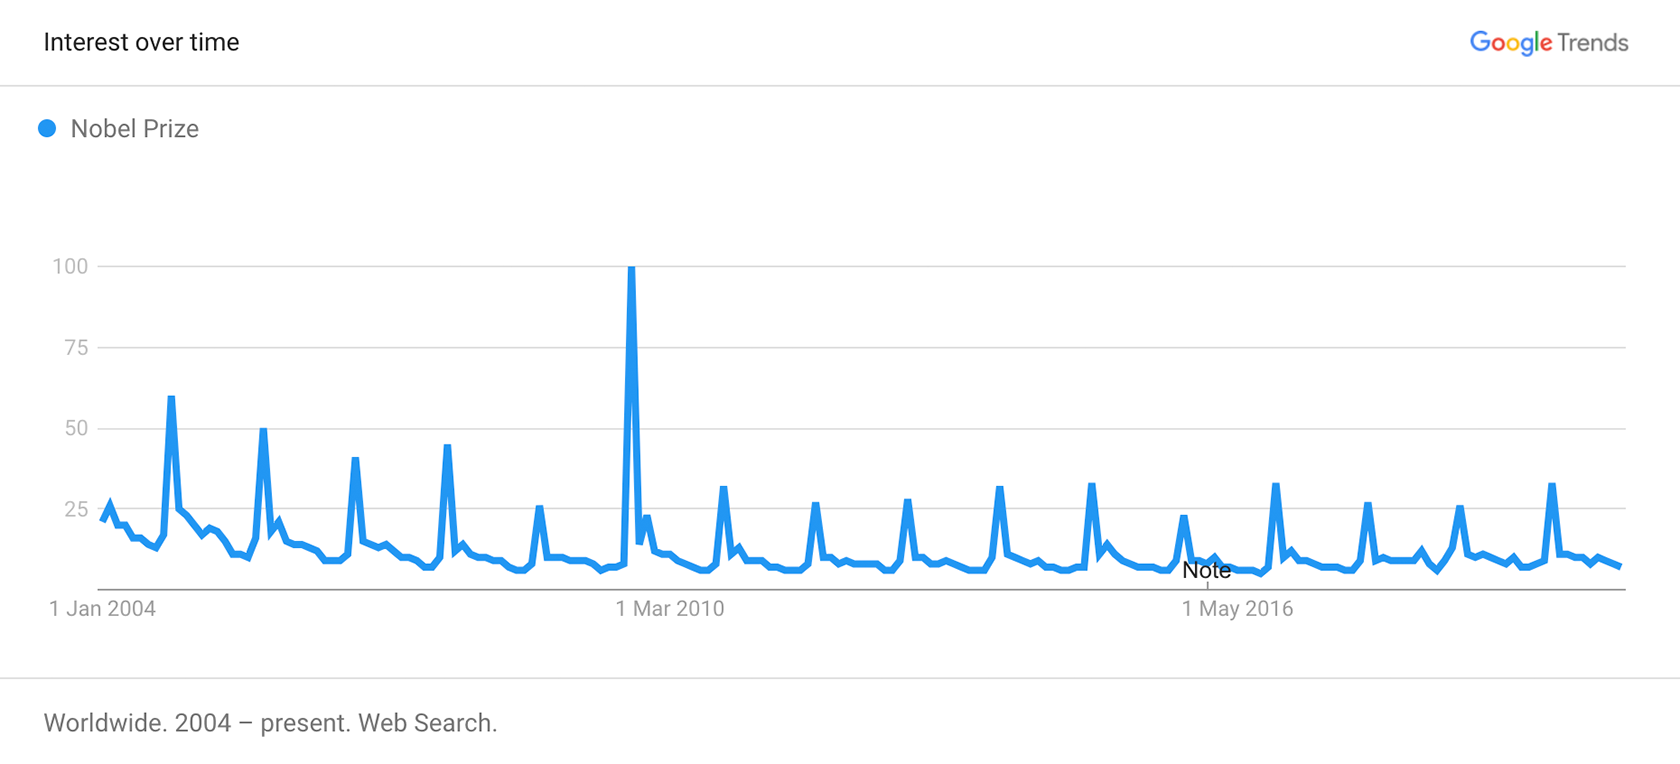 Google Trends - nobel prize interest over time